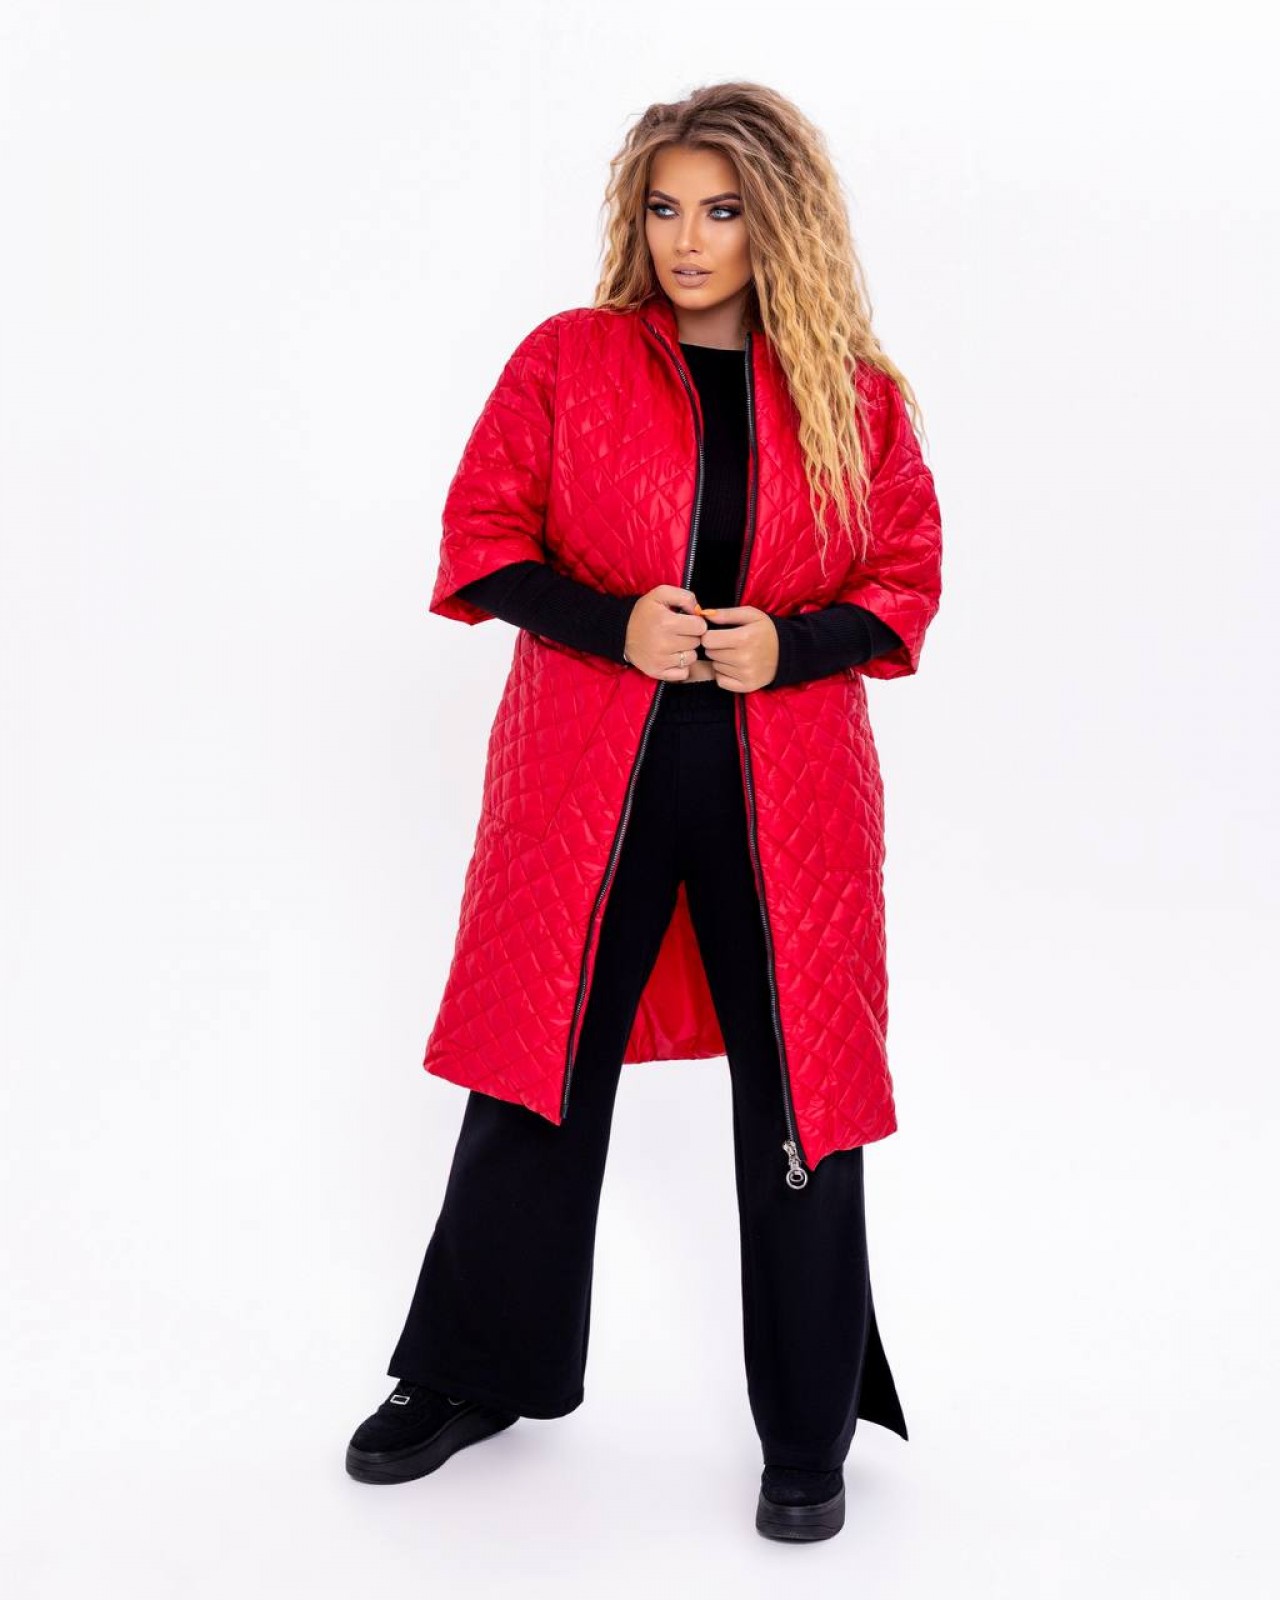 Жіноча куртка-пальто з плащової тканини р.58 377501